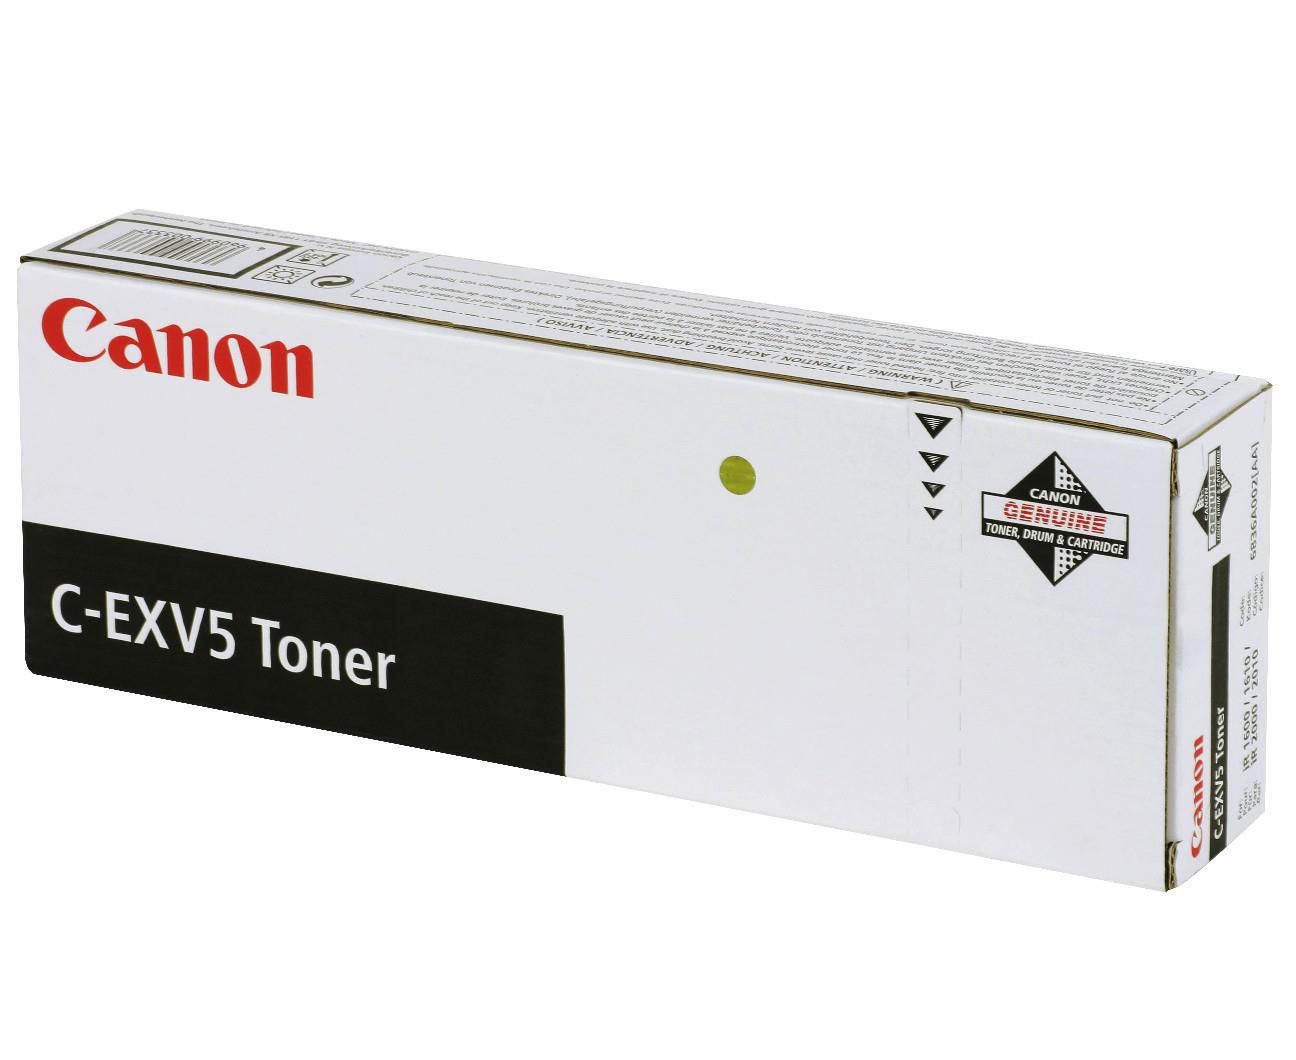 Canon C-exv5 Toner Ir